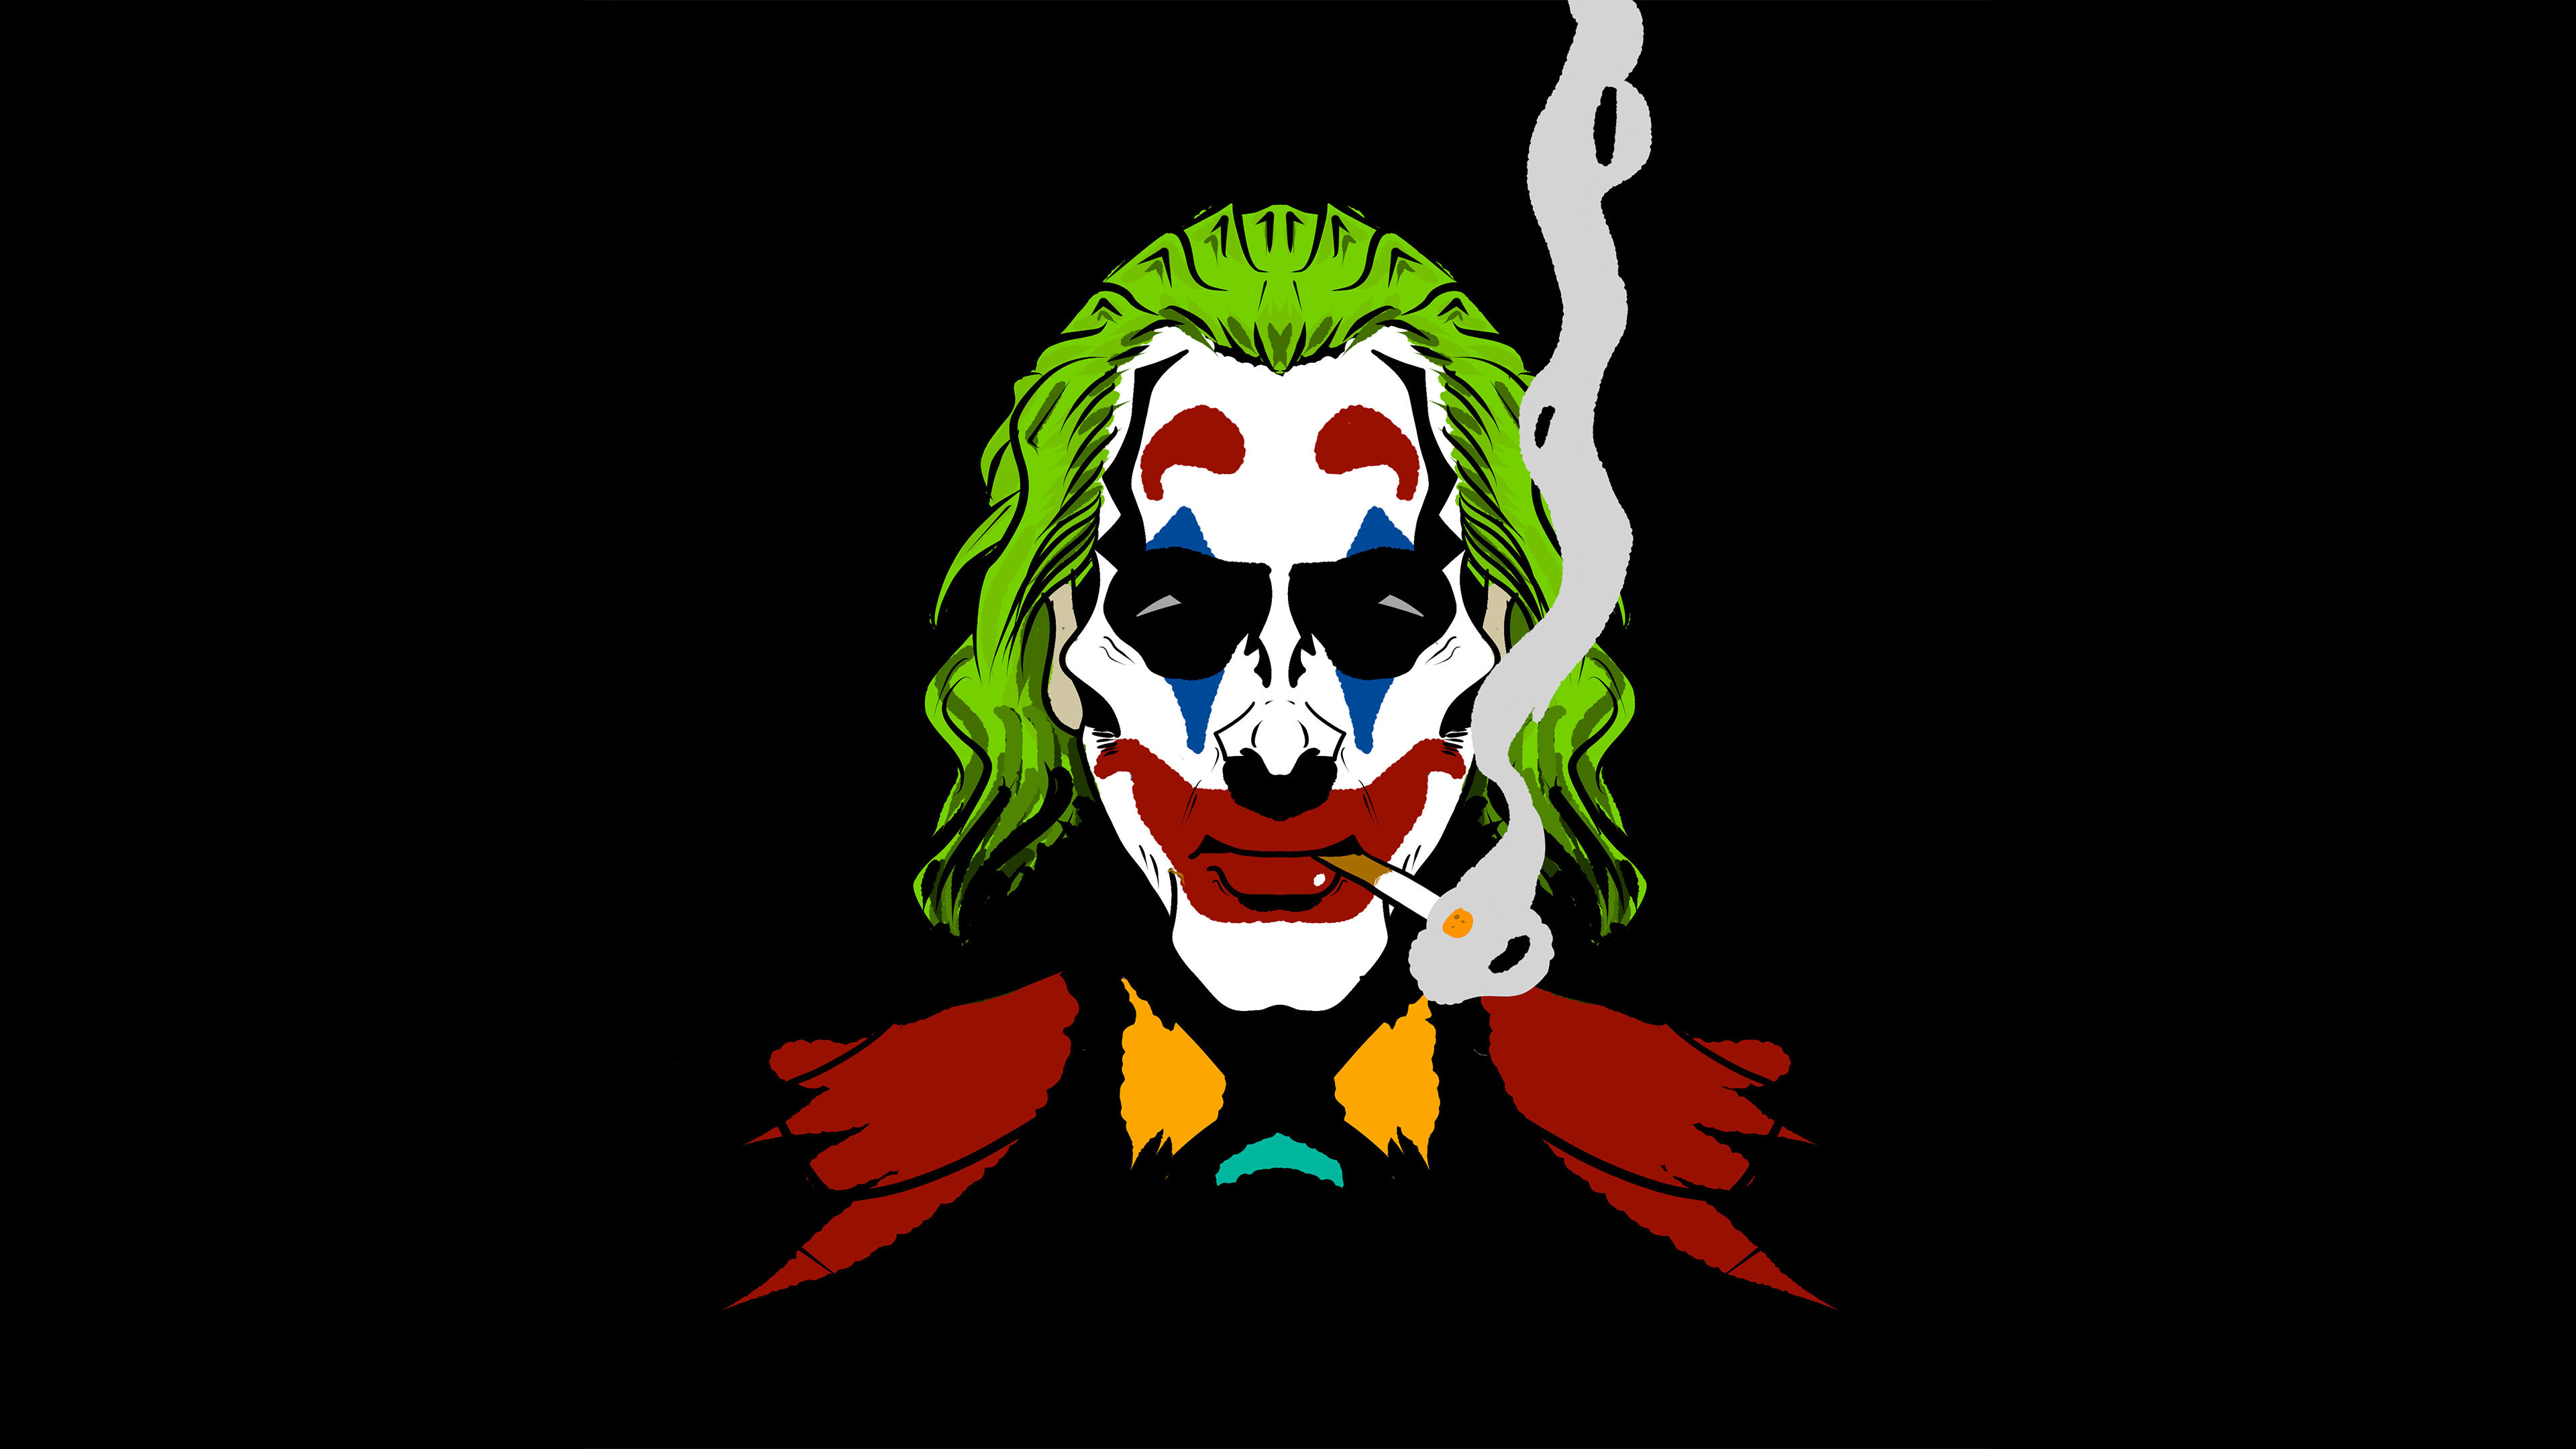 joker cigratte smoking 1570918664 - Joker Cigratte Smoking - supervillain wallpapers, superheroes wallpapers, joker wallpapers, joker movie wallpapers, hd-wallpapers, artwork wallpapers, 4k-wallpapers